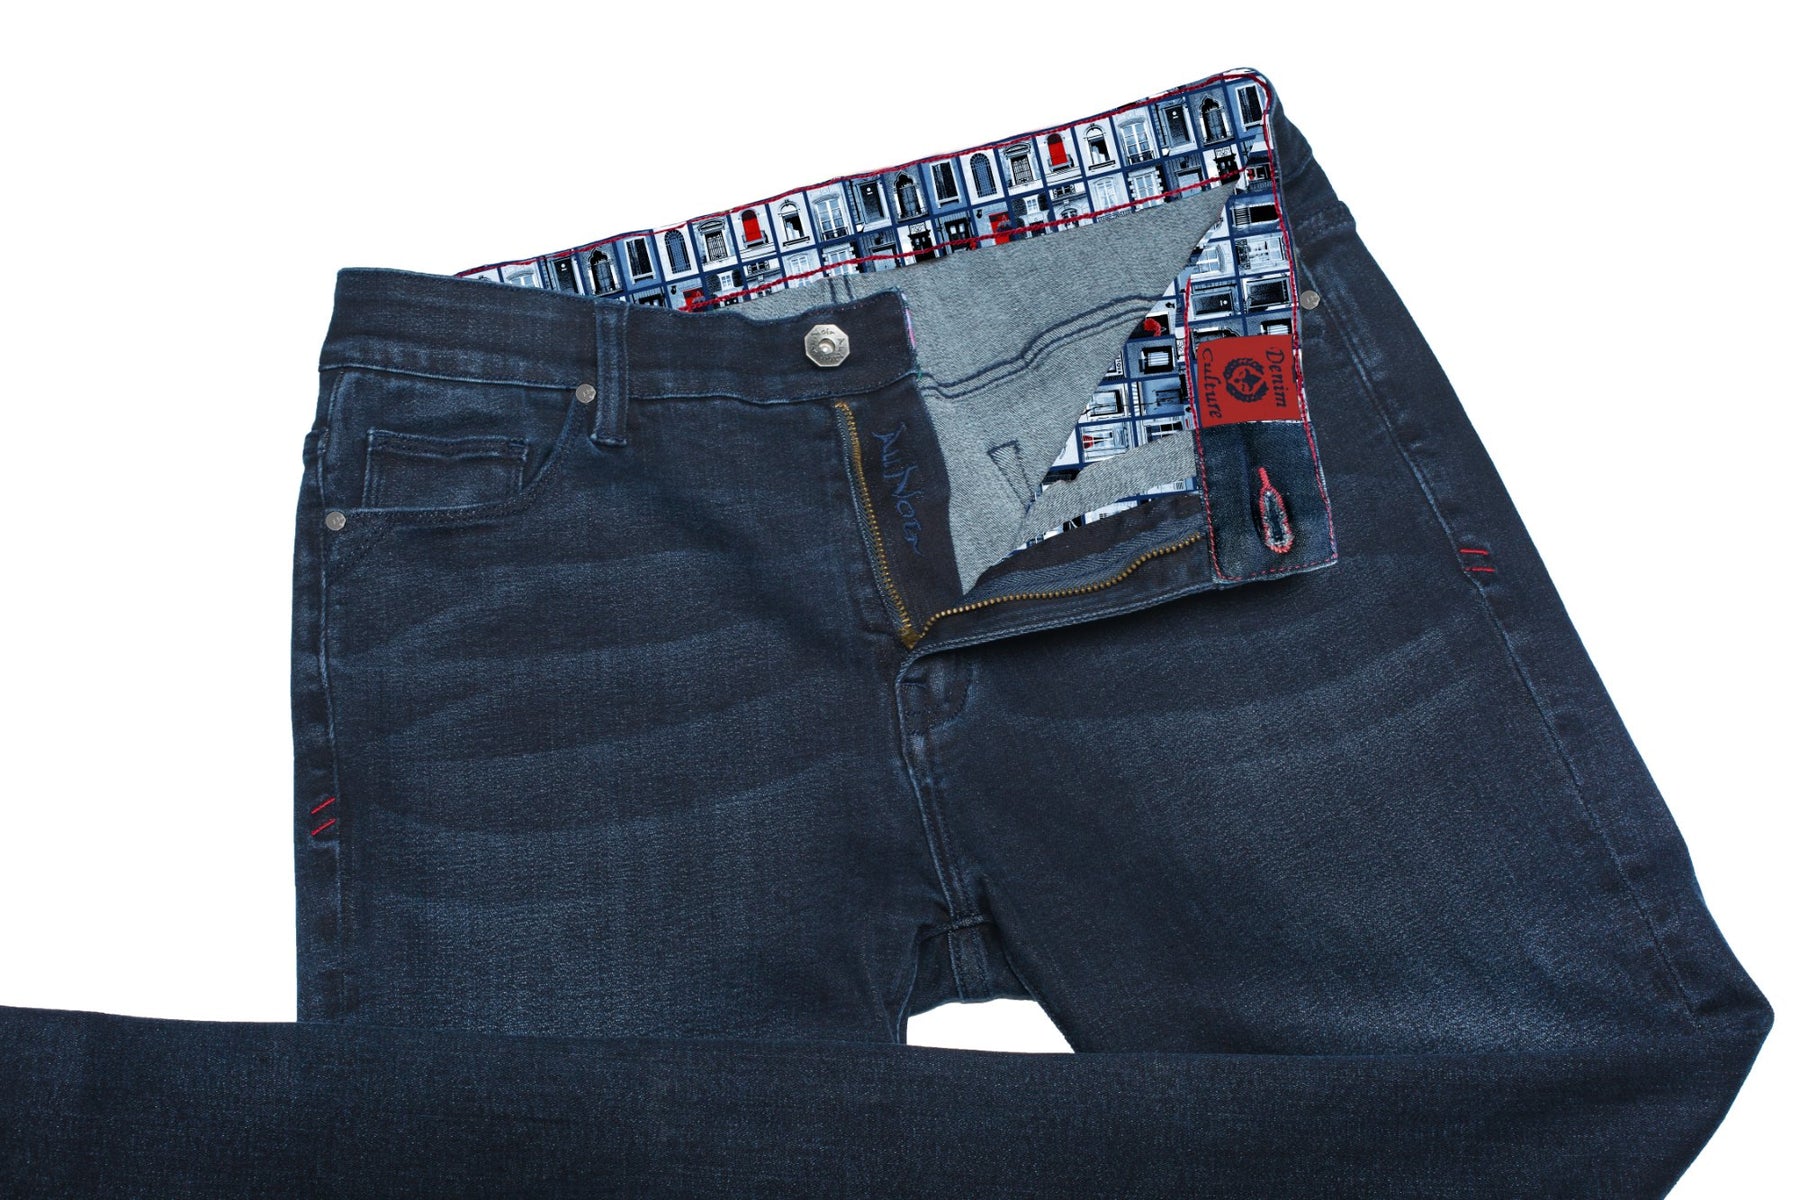 Jeans Au Noir - Johnny-T couleur Mtl - Machemise.ca , Inventaire complet de la marque Au Noir